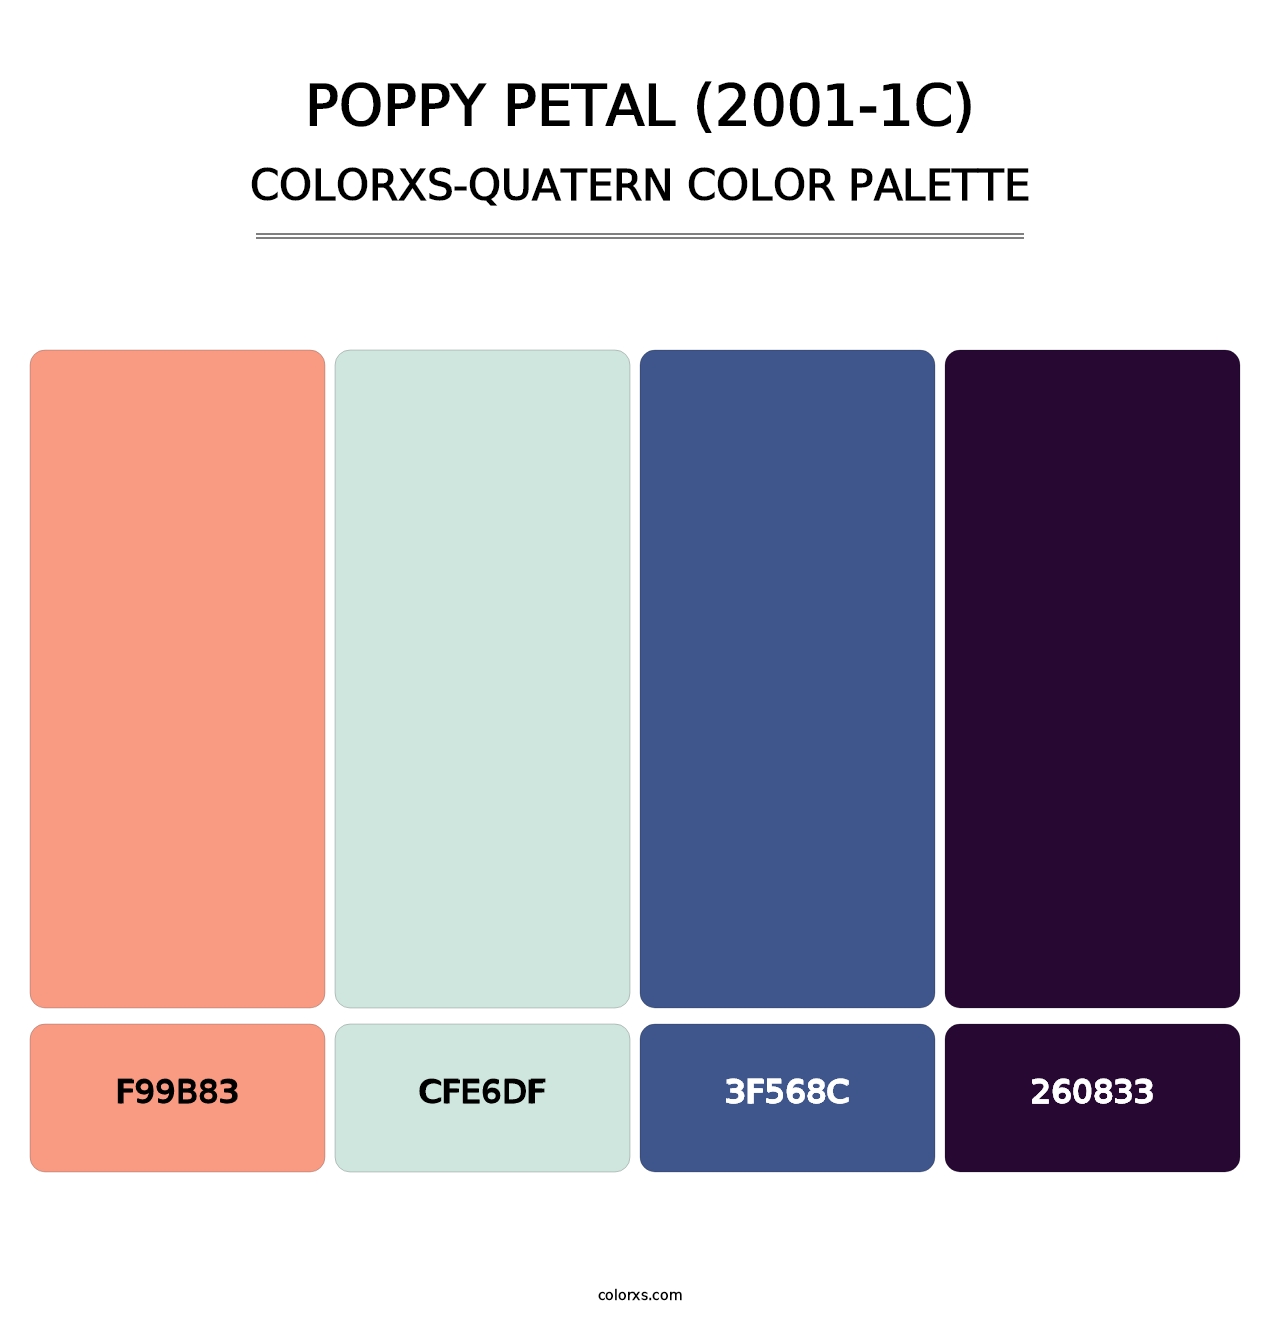 Poppy Petal (2001-1C) - Colorxs Quatern Palette